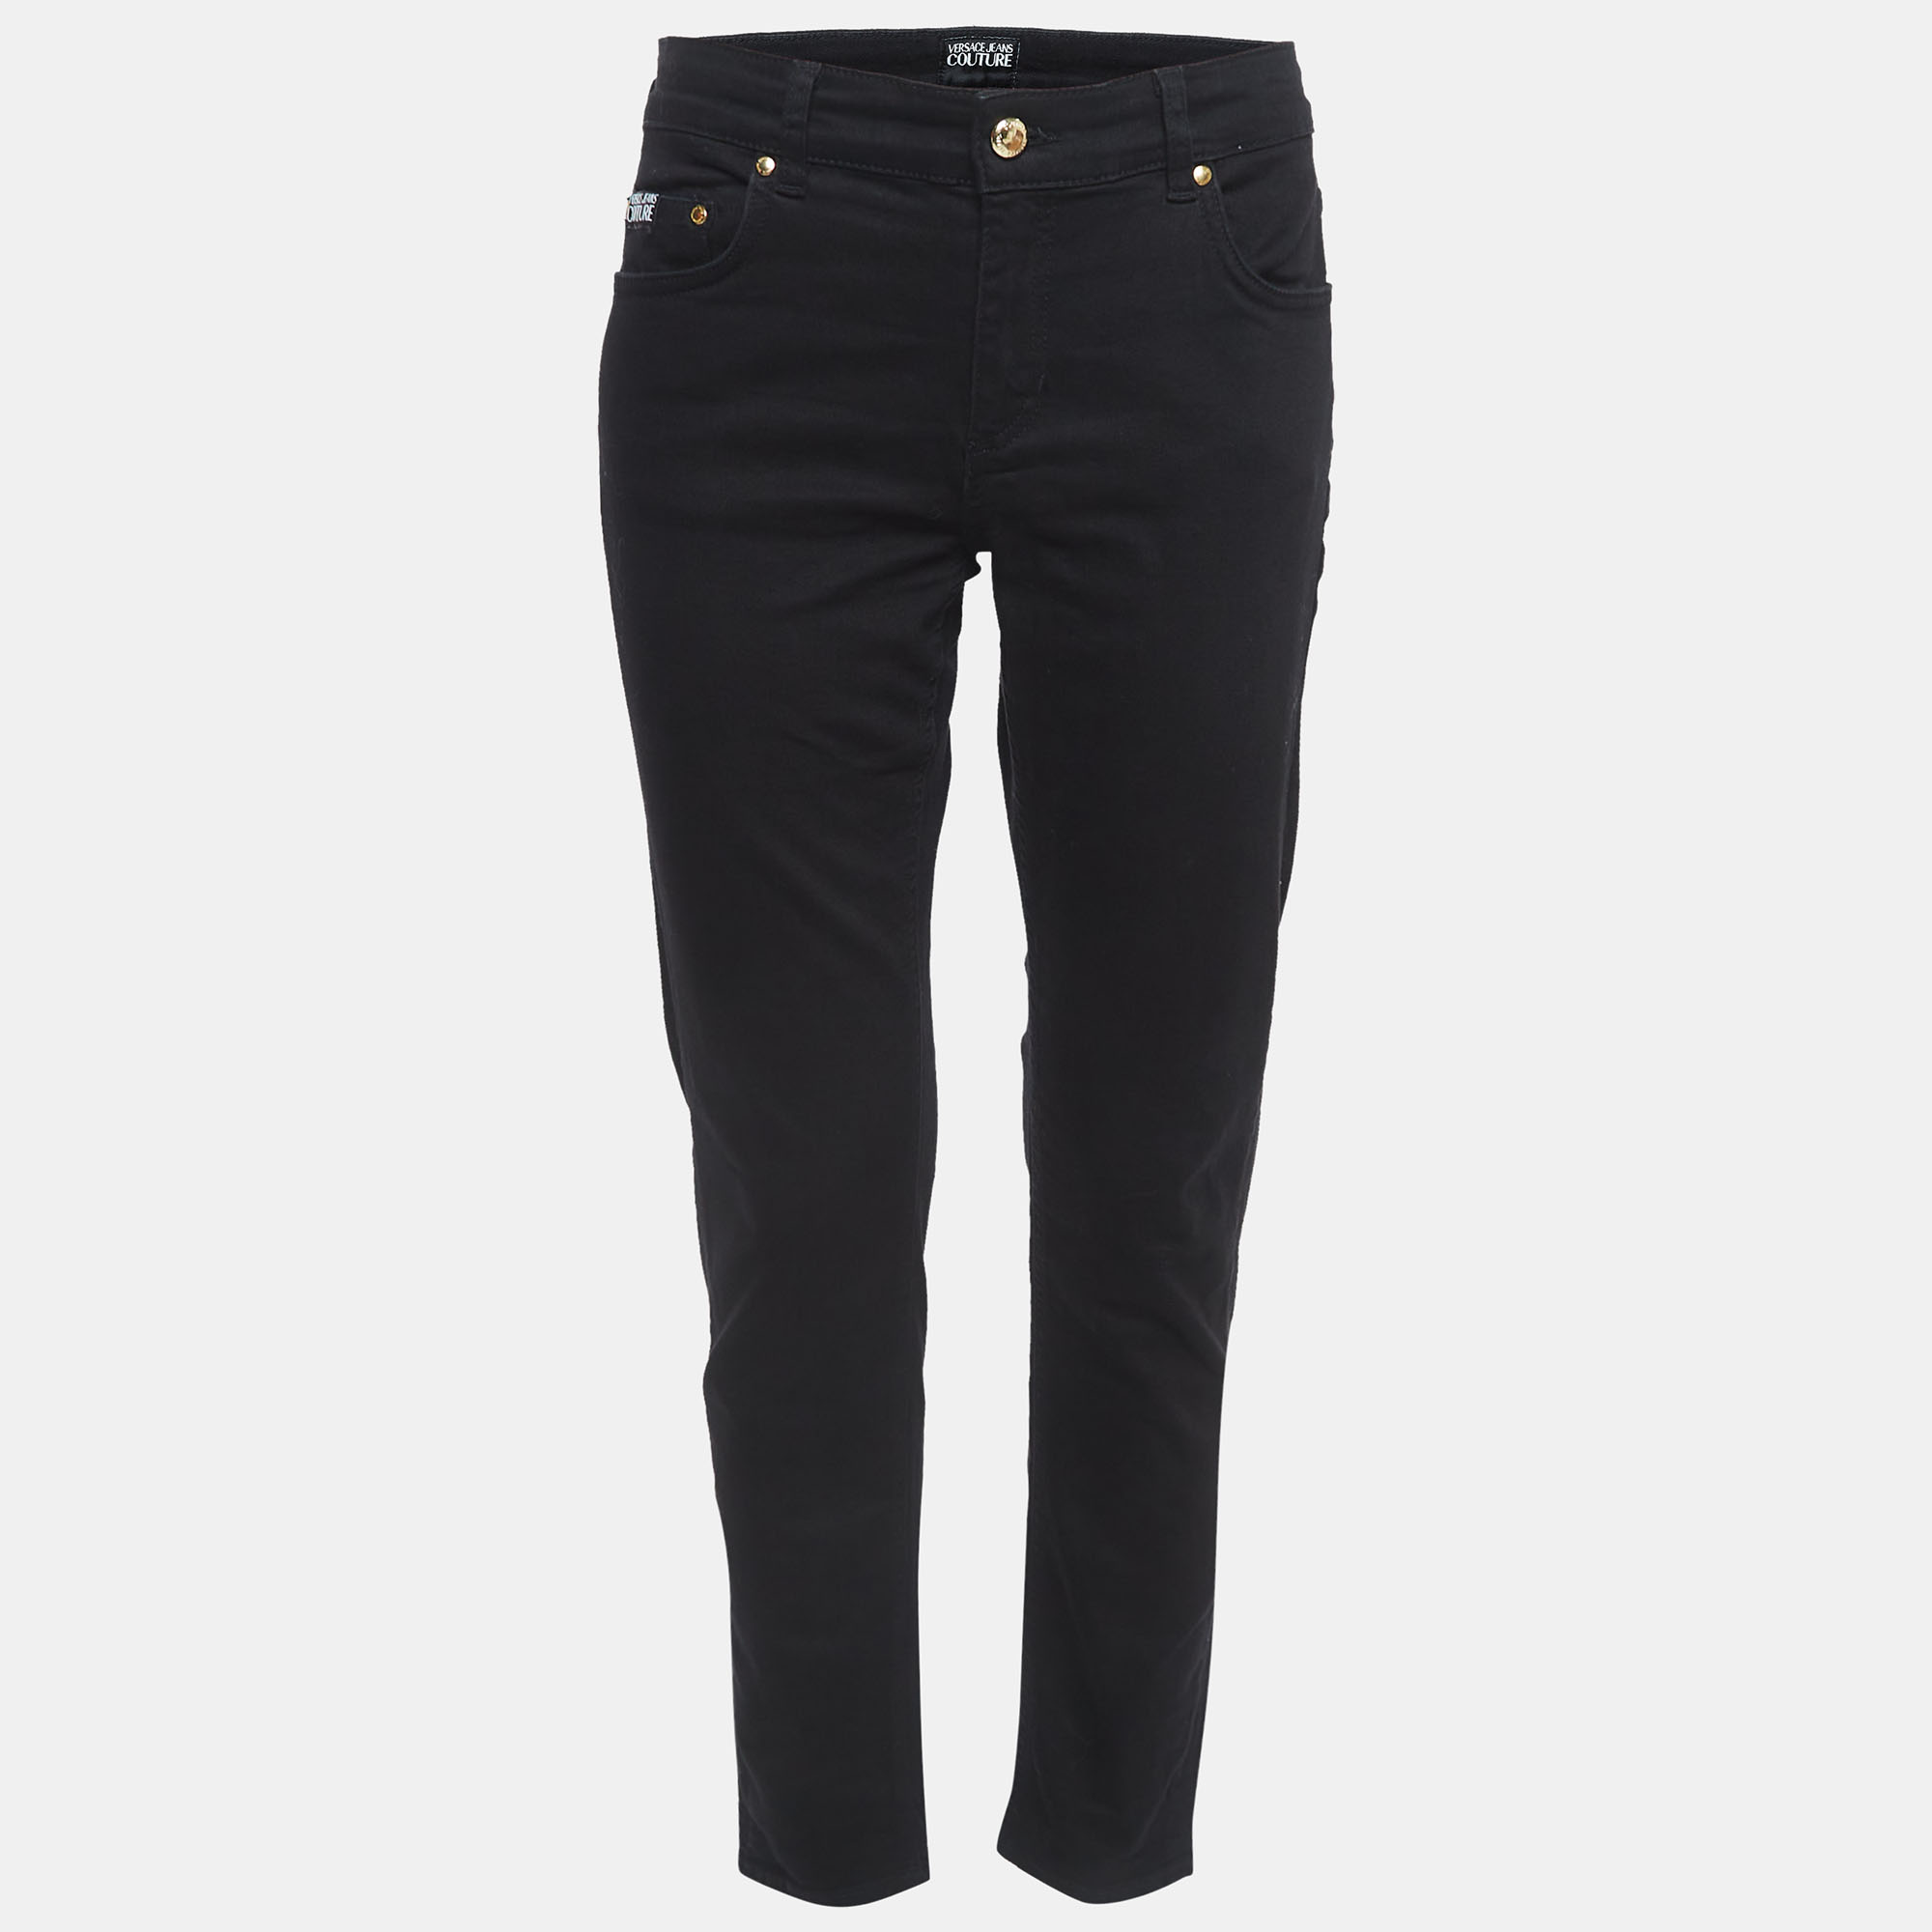 Versace Jeans Couture Black Denim Slim Fit Jeans M Waist 30